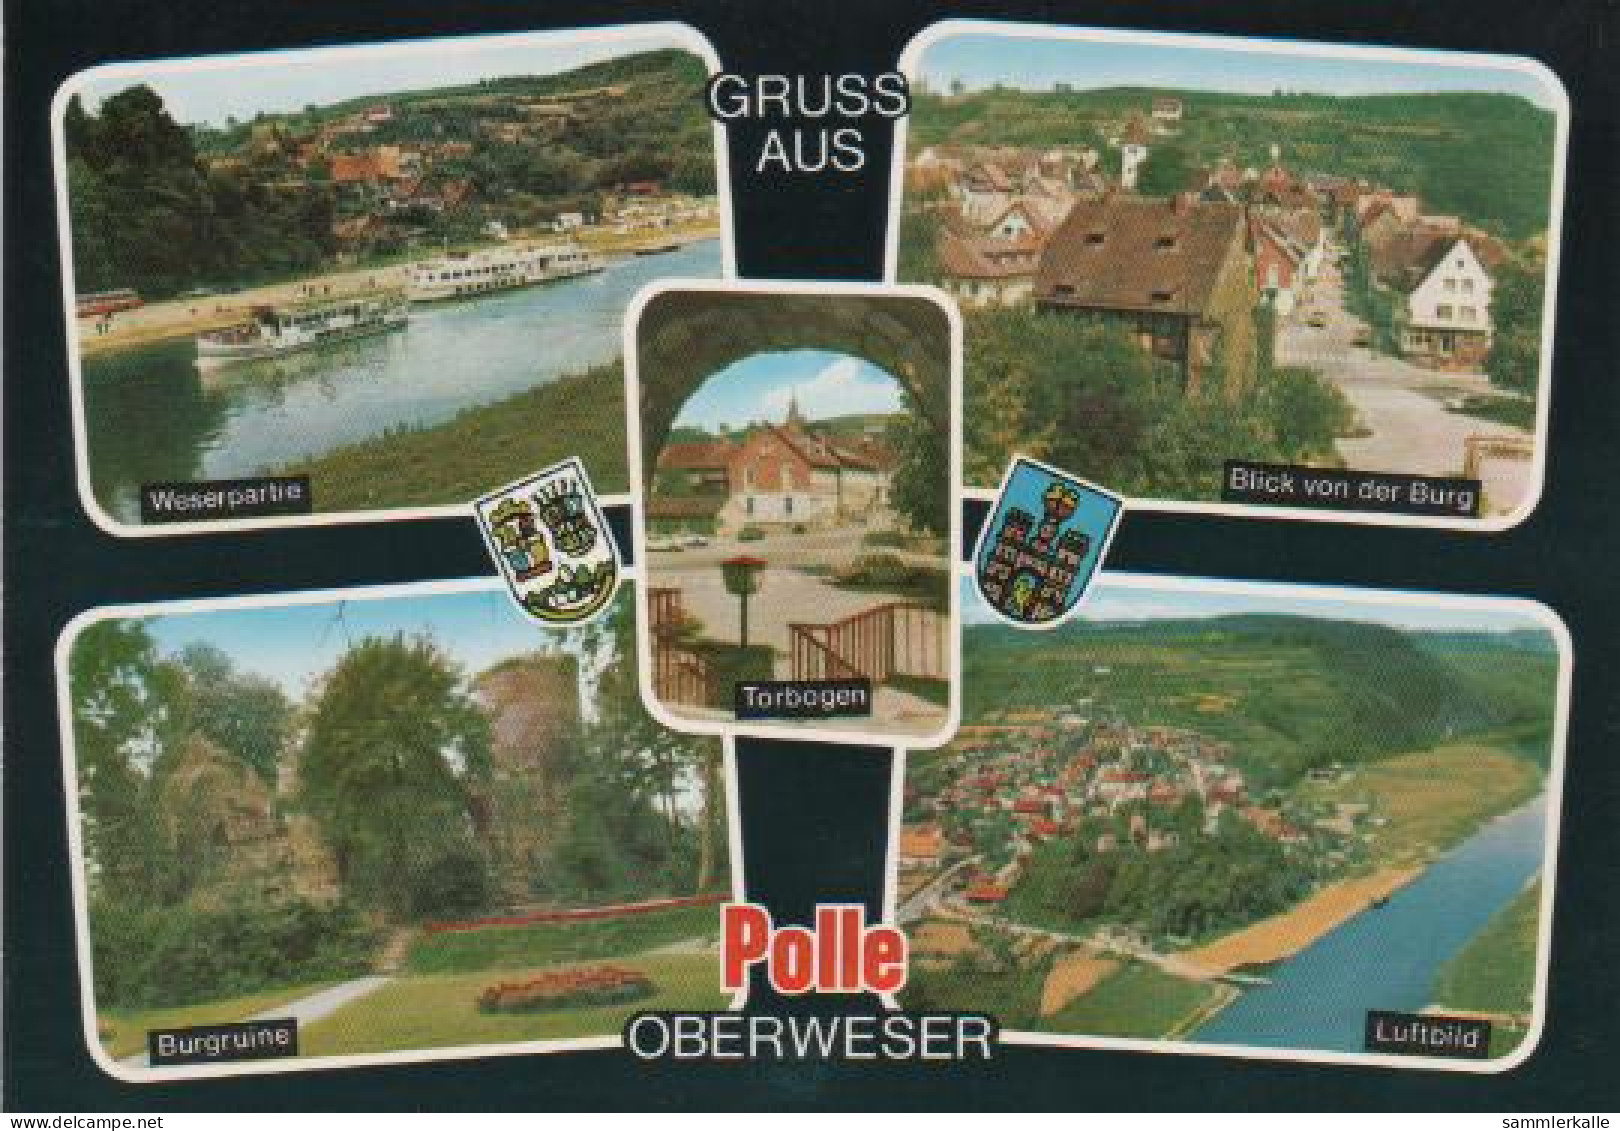 222 - Polle - Weserpartie, Burgruine, Torbogen, Blick Von Der Burg, Luftbild - 1971 - Bodenwerder